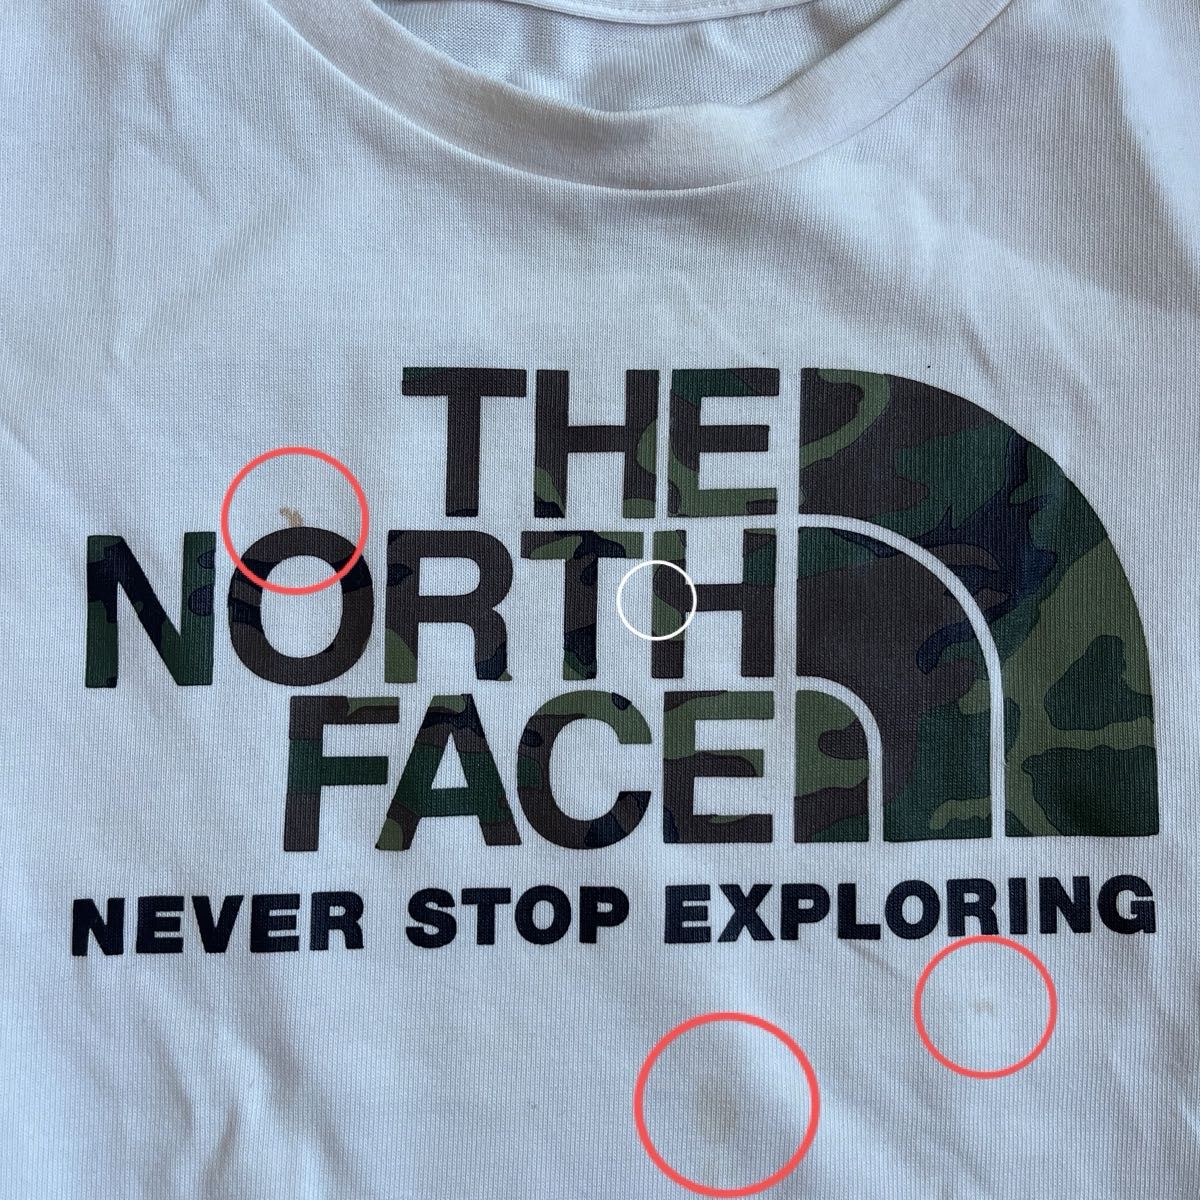 ノースフェイス ザノースフェイス THE  NORTH FACE Tシャツ　110cm